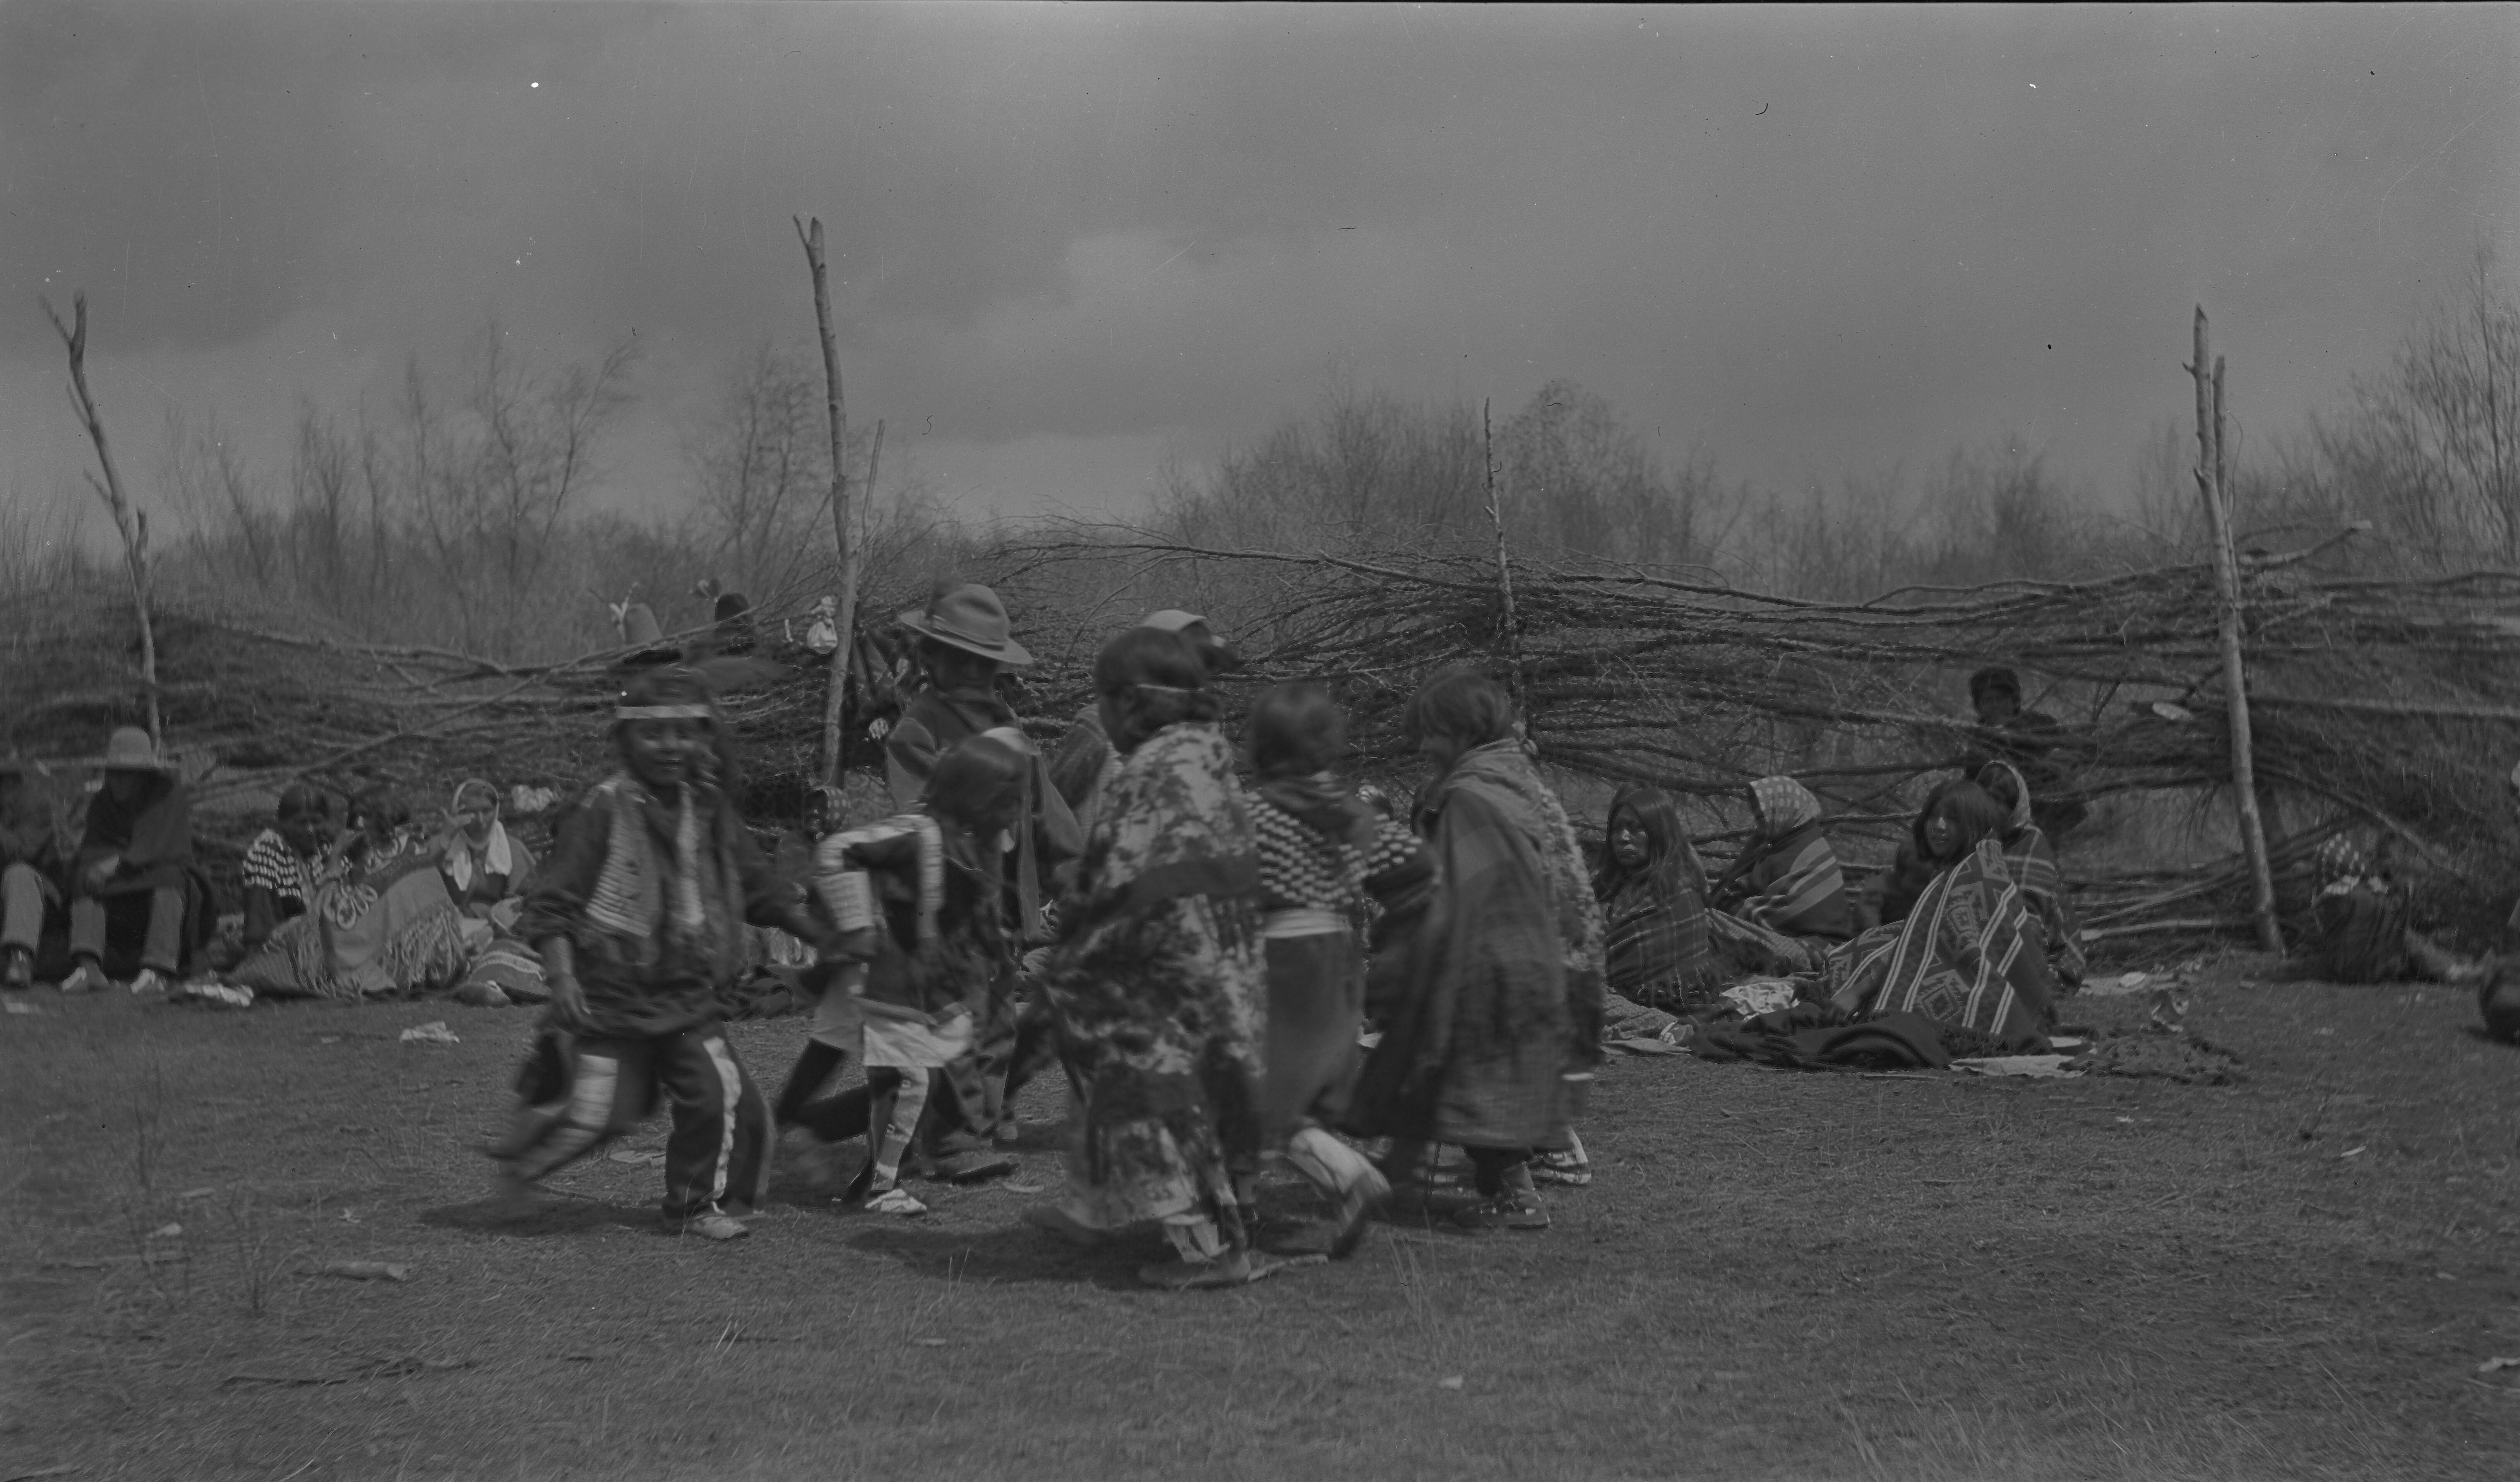  Historical image of Ute Children.